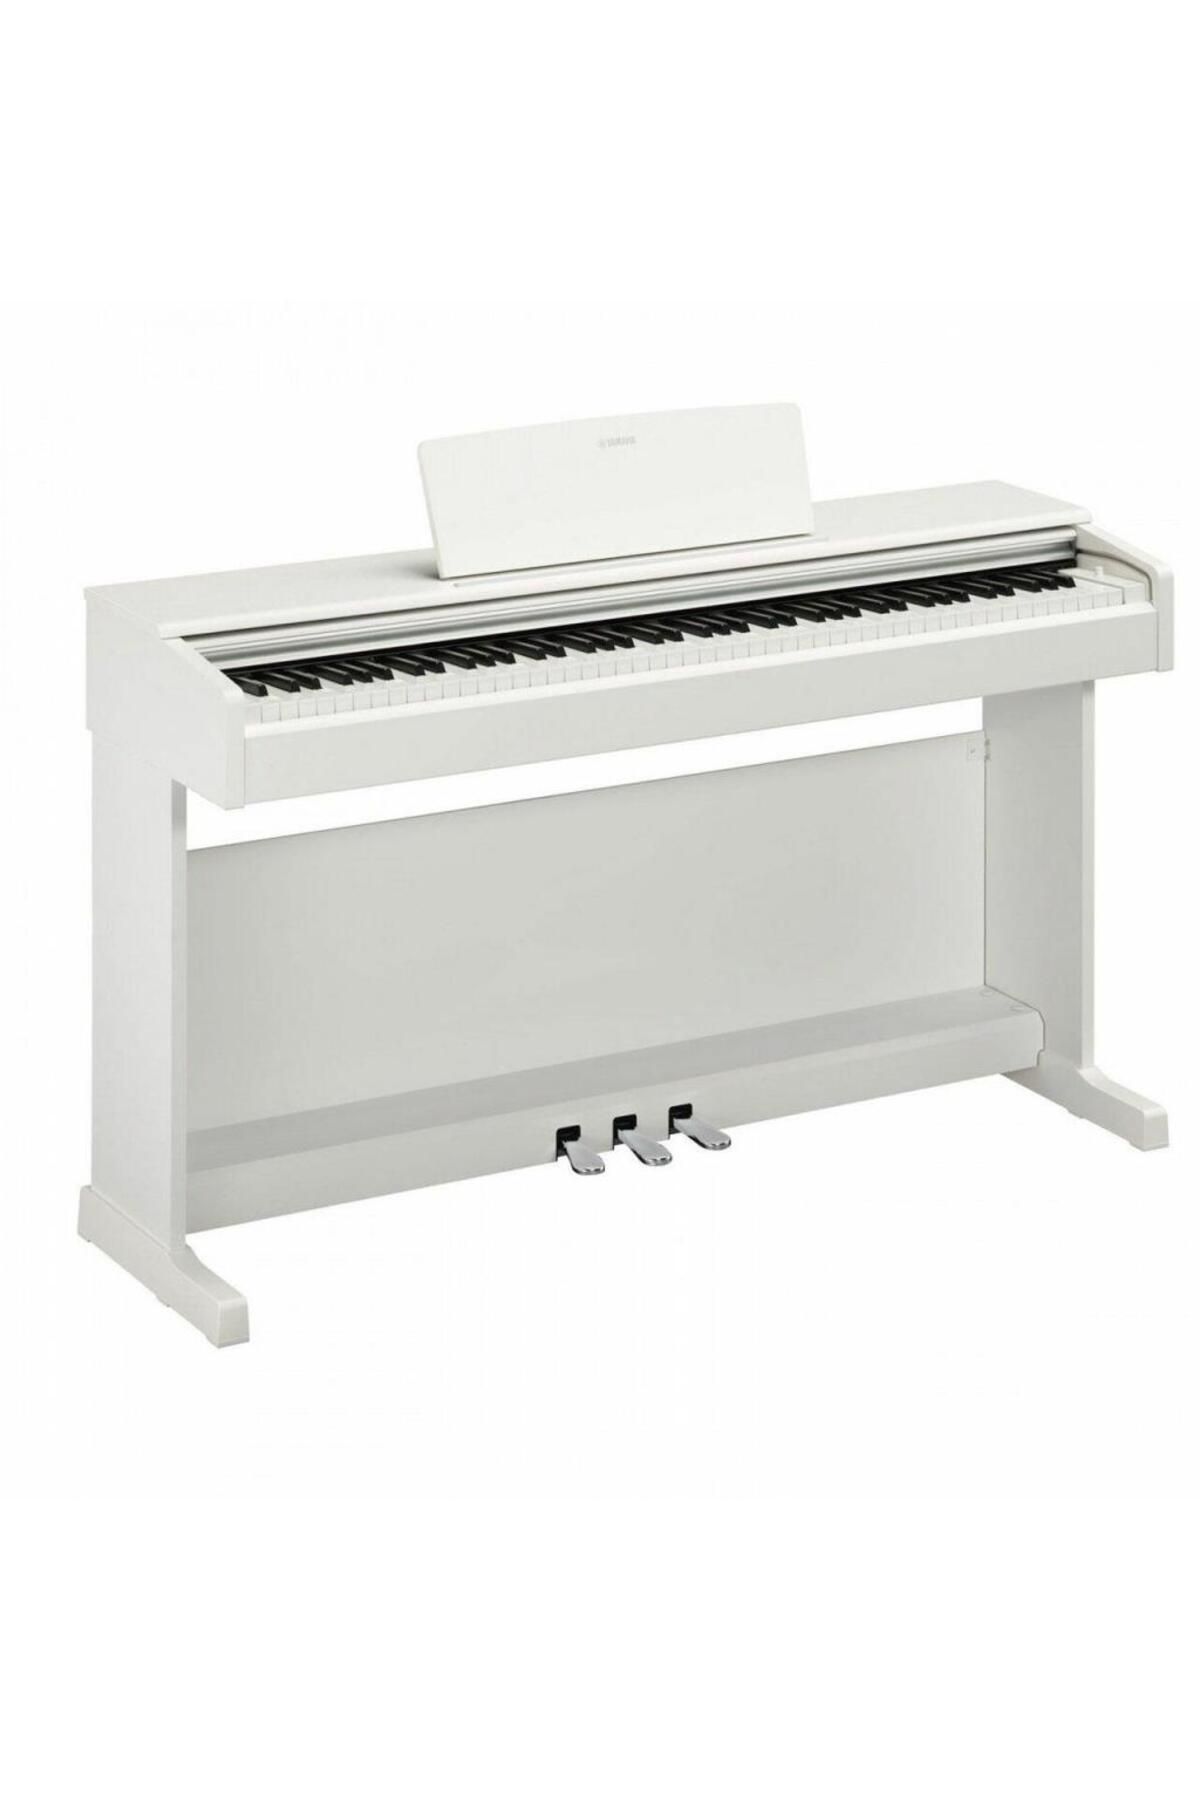 Yamaha Ydp145wh Dijital Piyano (BEYAZ) (TABURE KULAKLIK)